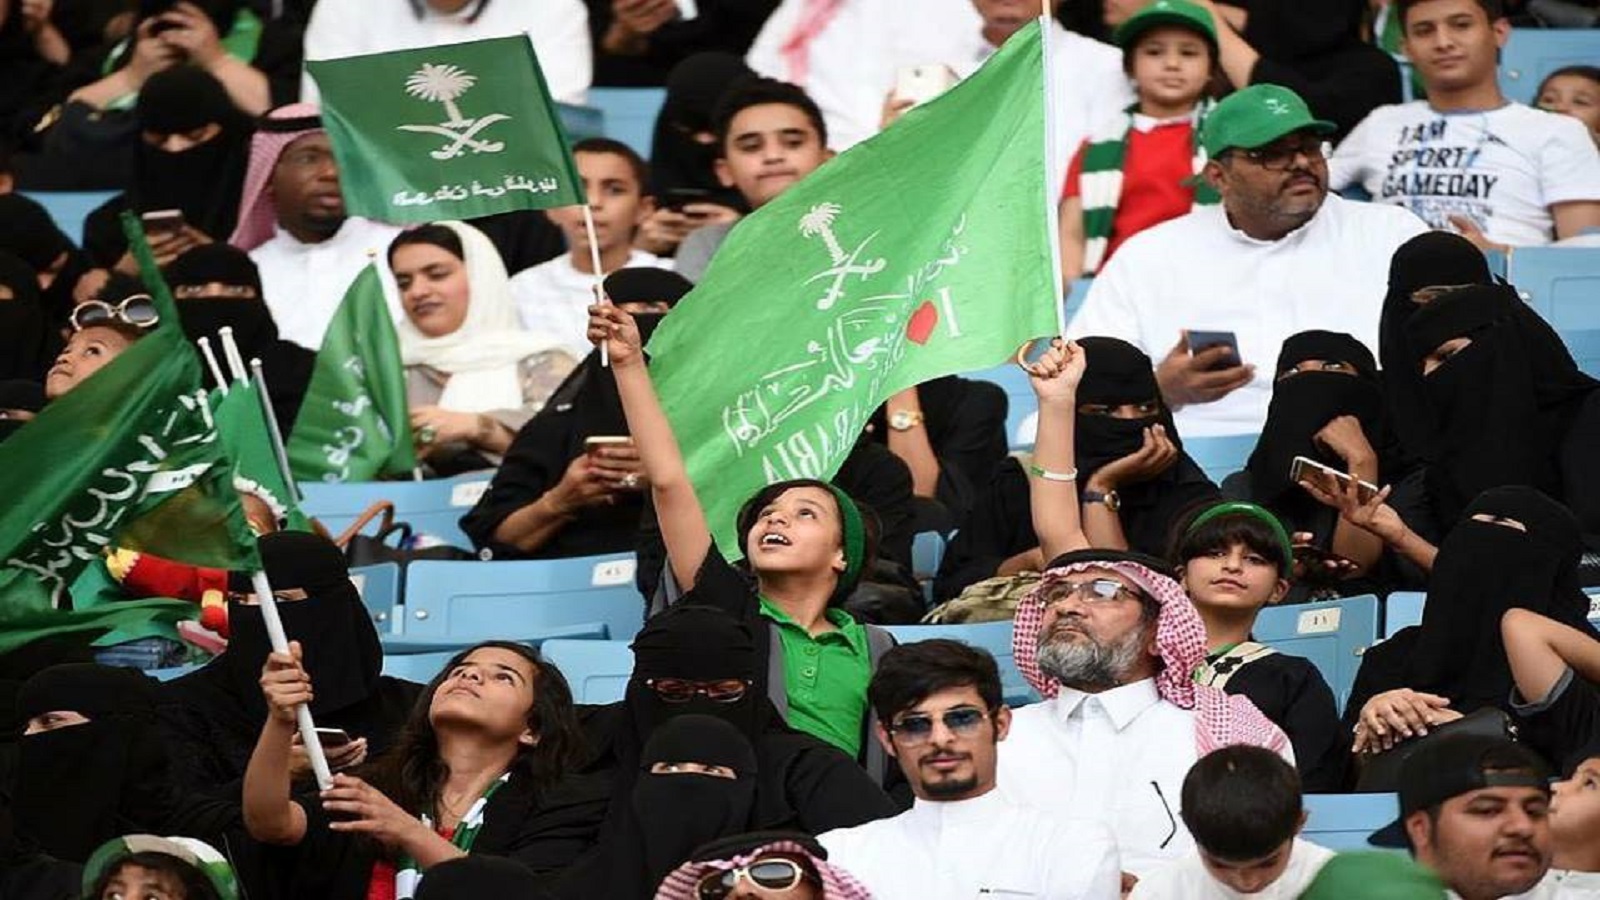 العيد الوطني للسعودية: الاحتفالات المختلطة.. "وطنية المعاصي"!